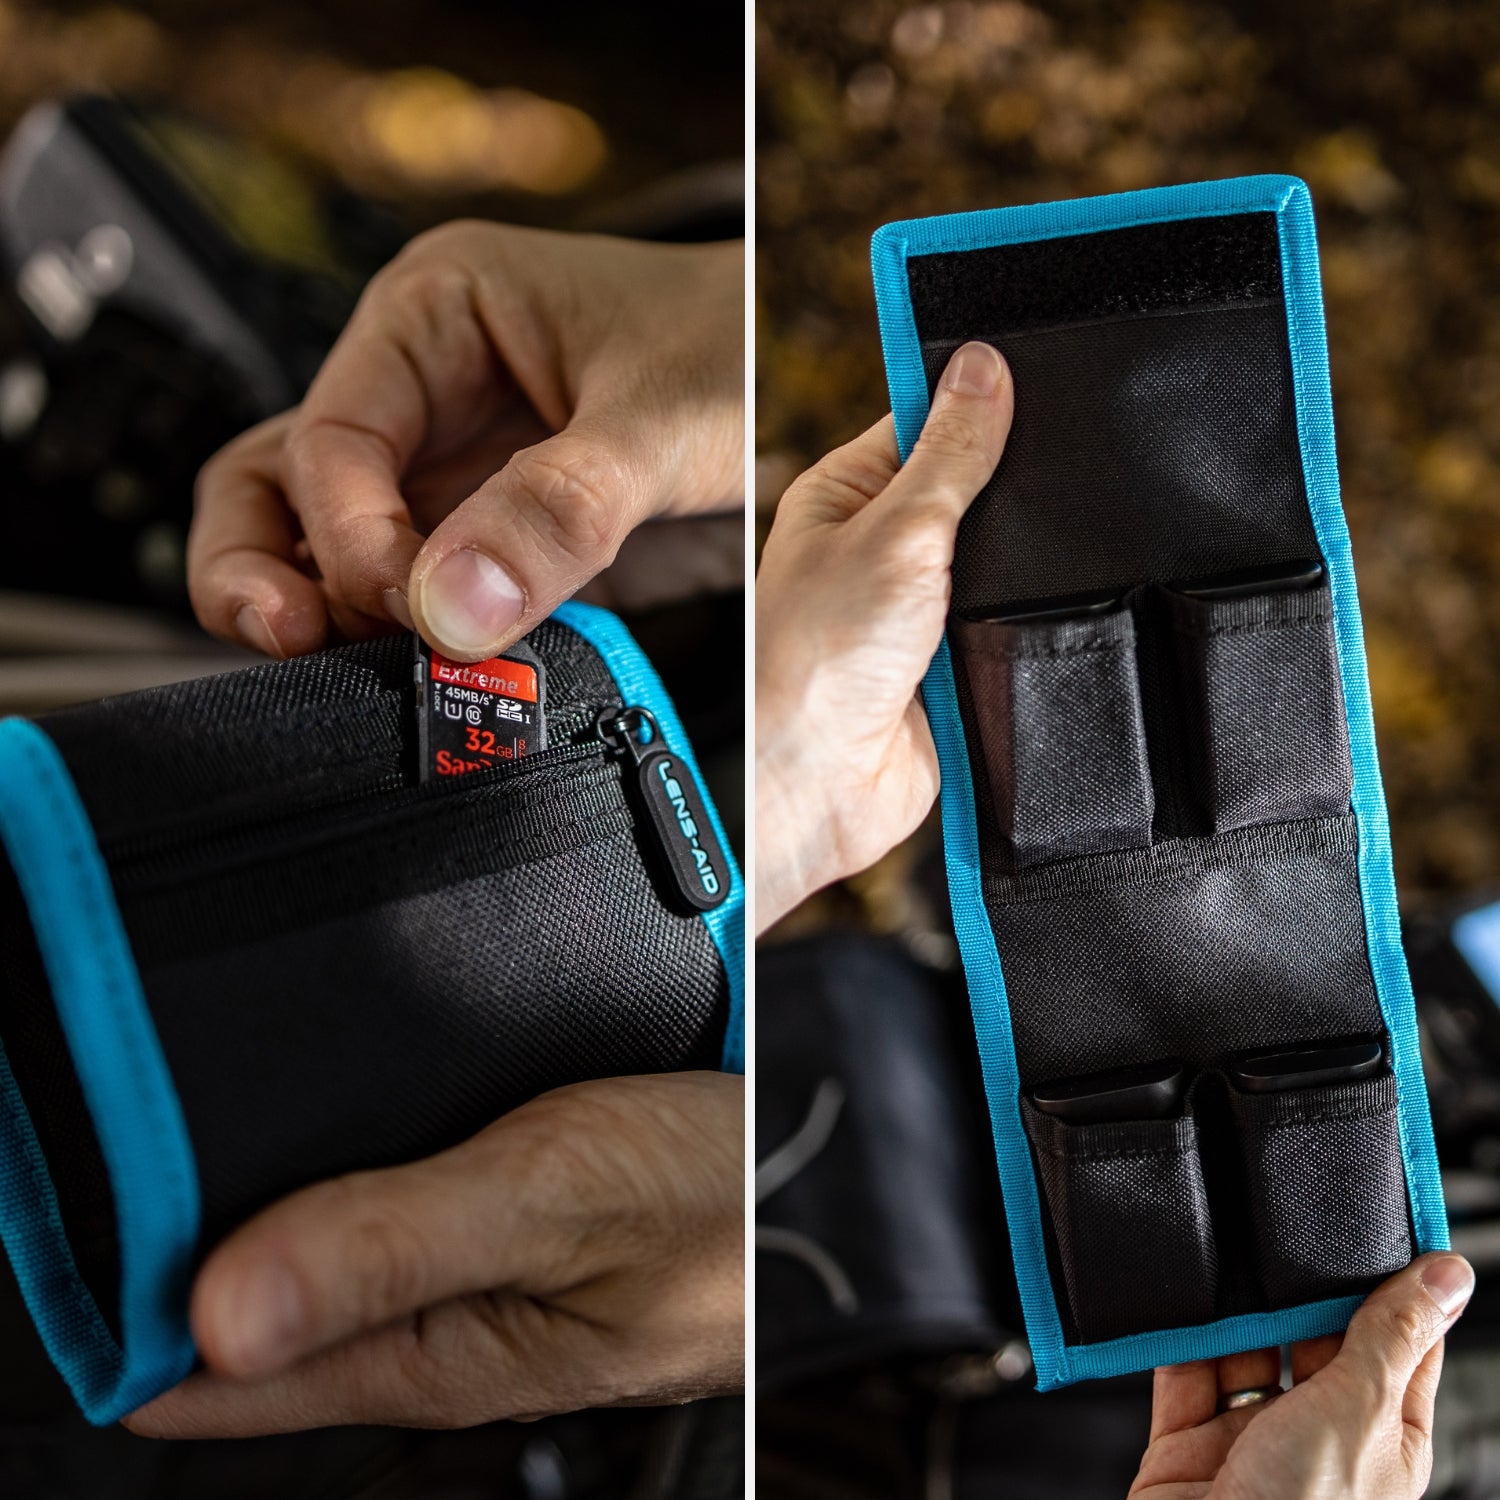 Kamera Akku-Tasche für bis zu 4 Akkus & Batterien